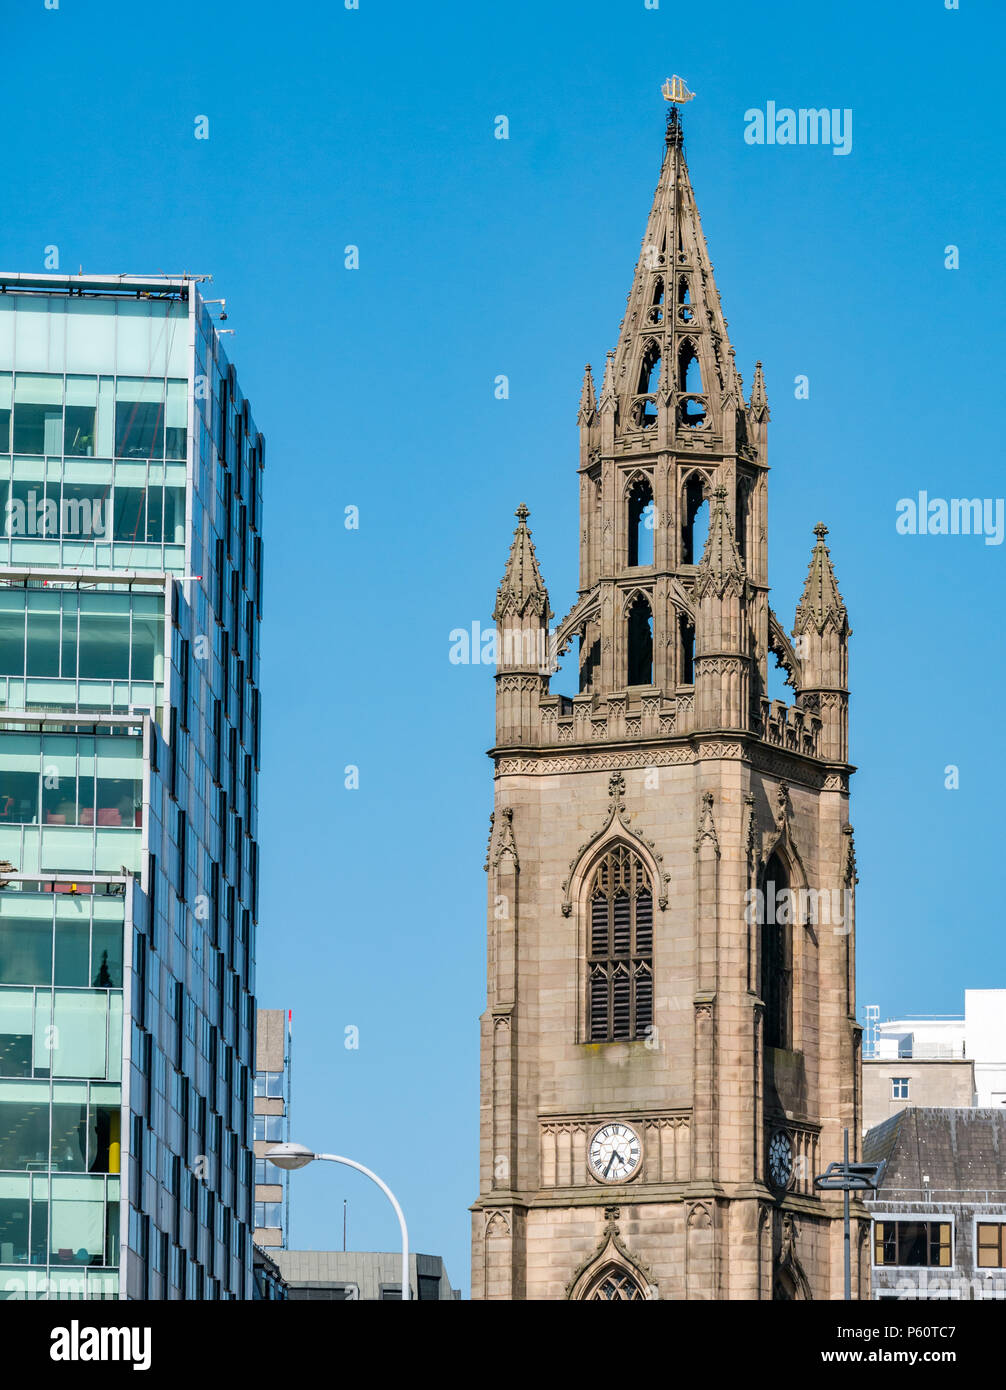 Vue rapprochée de l'église ornée avec bateau d'or pour la navigation sur le sommet contre l'église du ciel bleu de Notre Dame et Saint Nicolas, Liverpool, Angleterre Banque D'Images